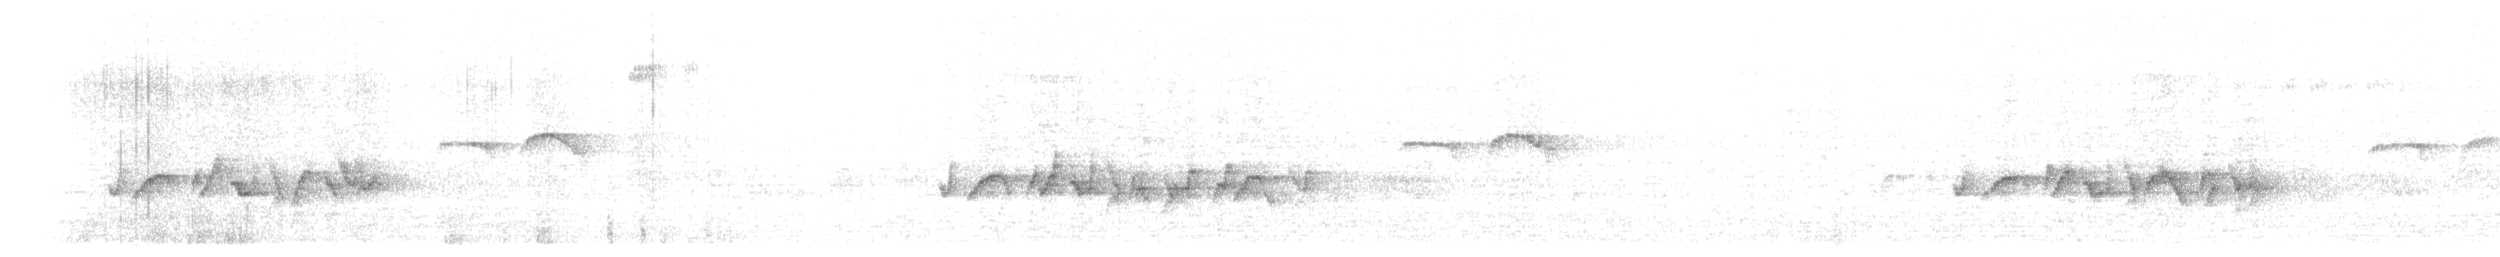 Ak Kaşlı Mavi Kuyruklu Bülbül (formosanus) - ML619652744